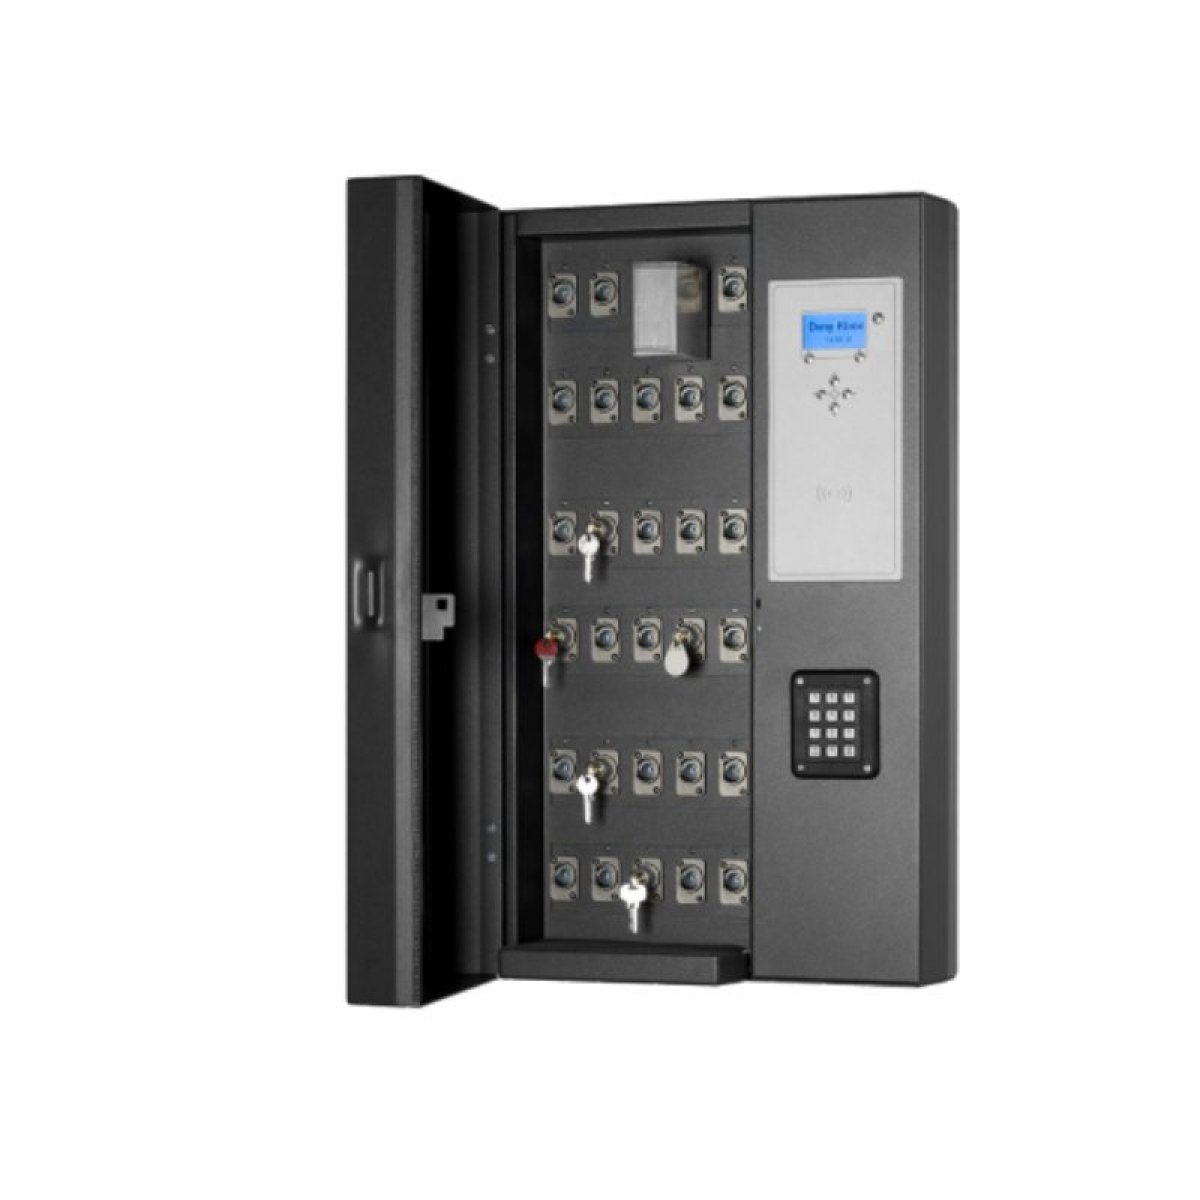 KBOX, l’armoire électronique qui simplifie la gestion des clés